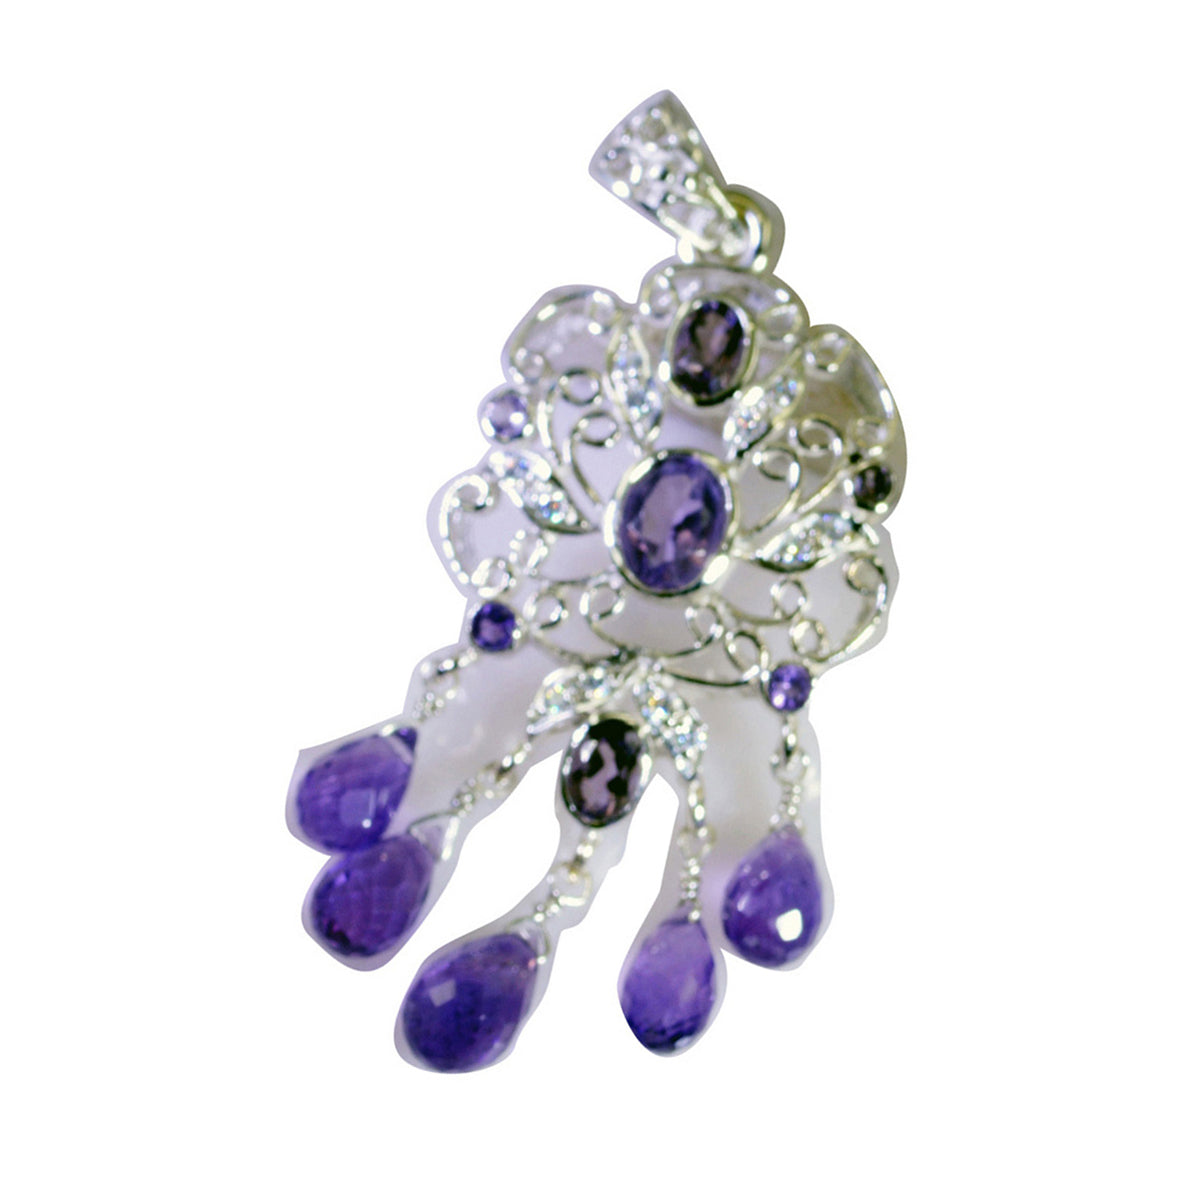 Riyo véritables pierres précieuses multi facettes violet améthyste pendentif en argent massif cadeau pour anniversaire